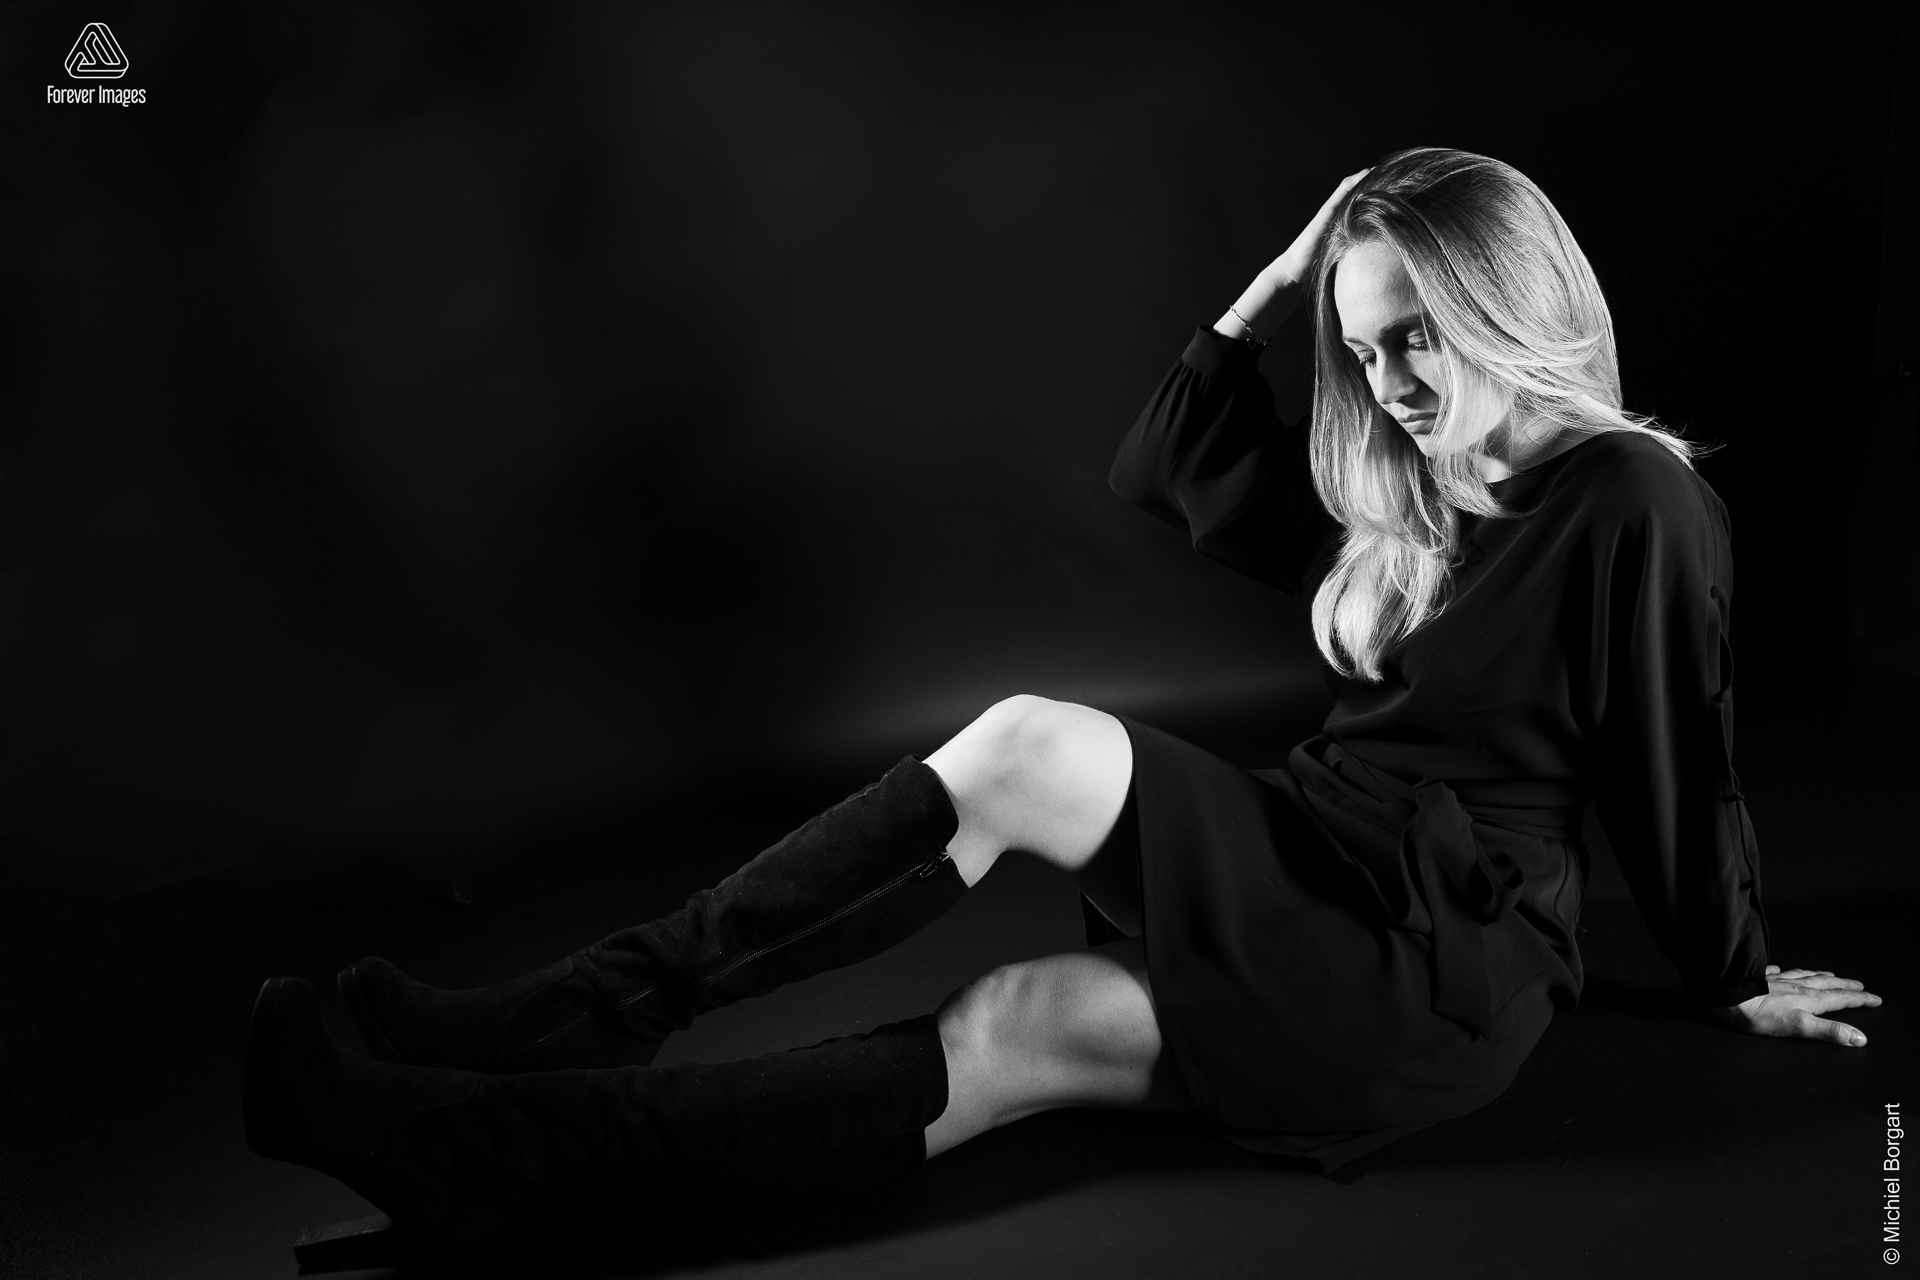 Portretfoto zwart-wit low key jonge dame zittend zwart jurkje en zwarte laarzen | Fanziska | Portretfotograaf Michiel Borgart - Forever Images.